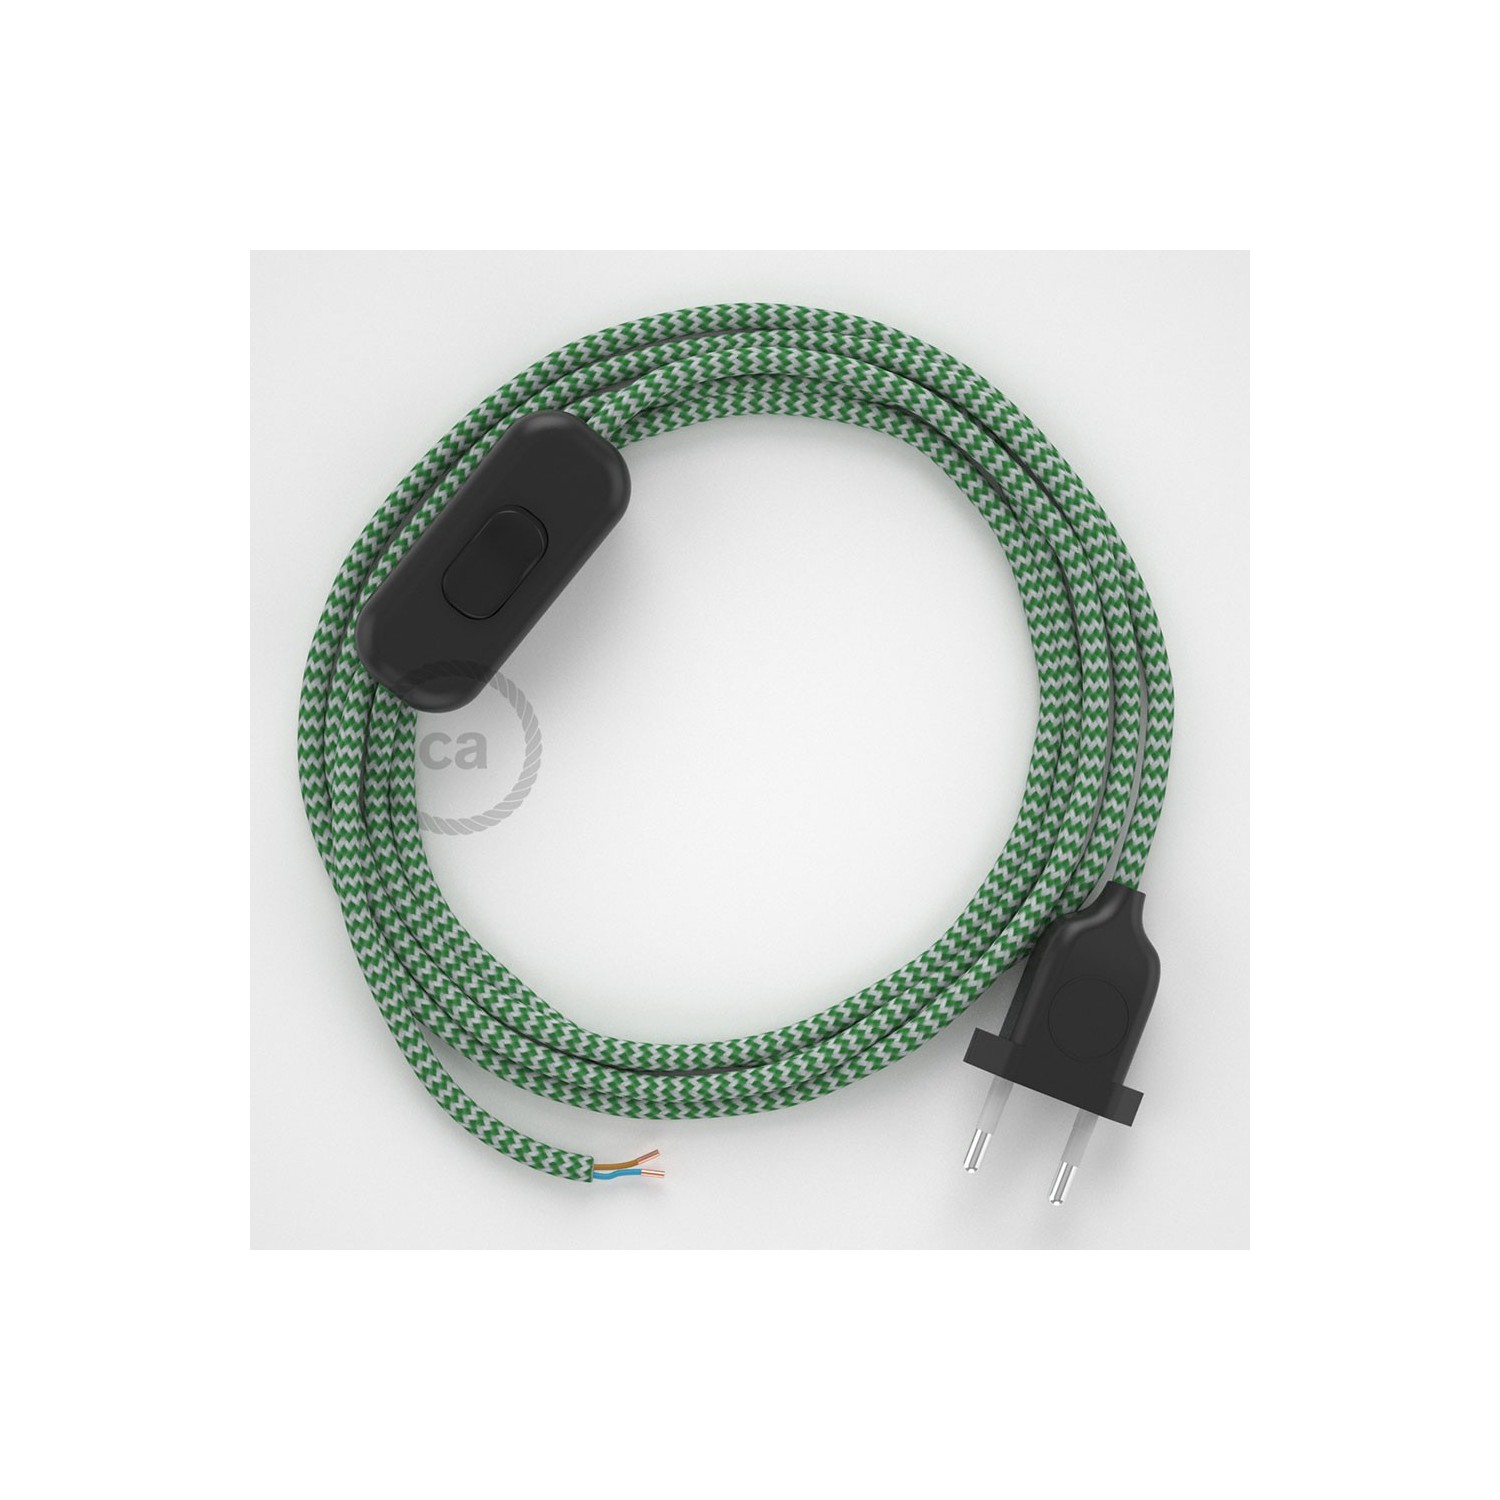 Sladdställ, RZ06 Grön Zig Zag Viskos 1,80 m. Välj färg på strömbrytare och kontakt